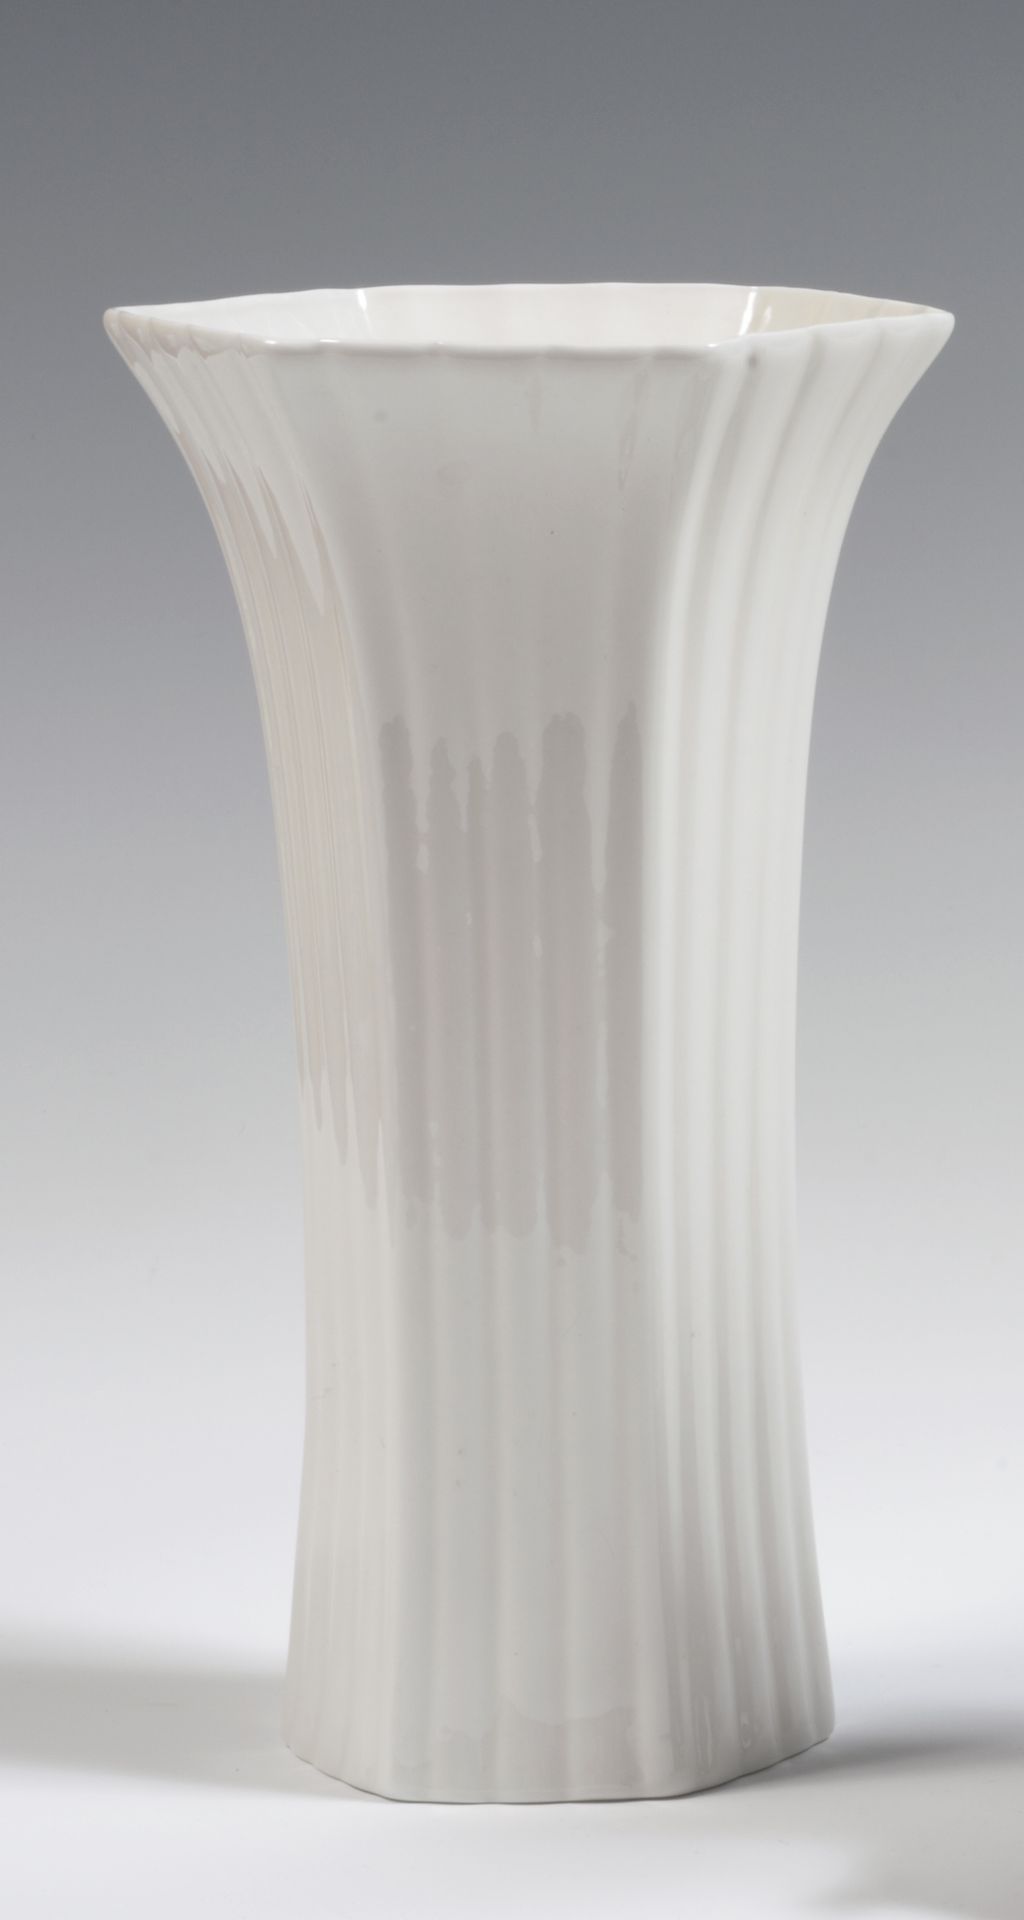 Null 
England

Paar sechseckige Vasen aus weißem Porzellan mit erhöhter Riffelun&hellip;